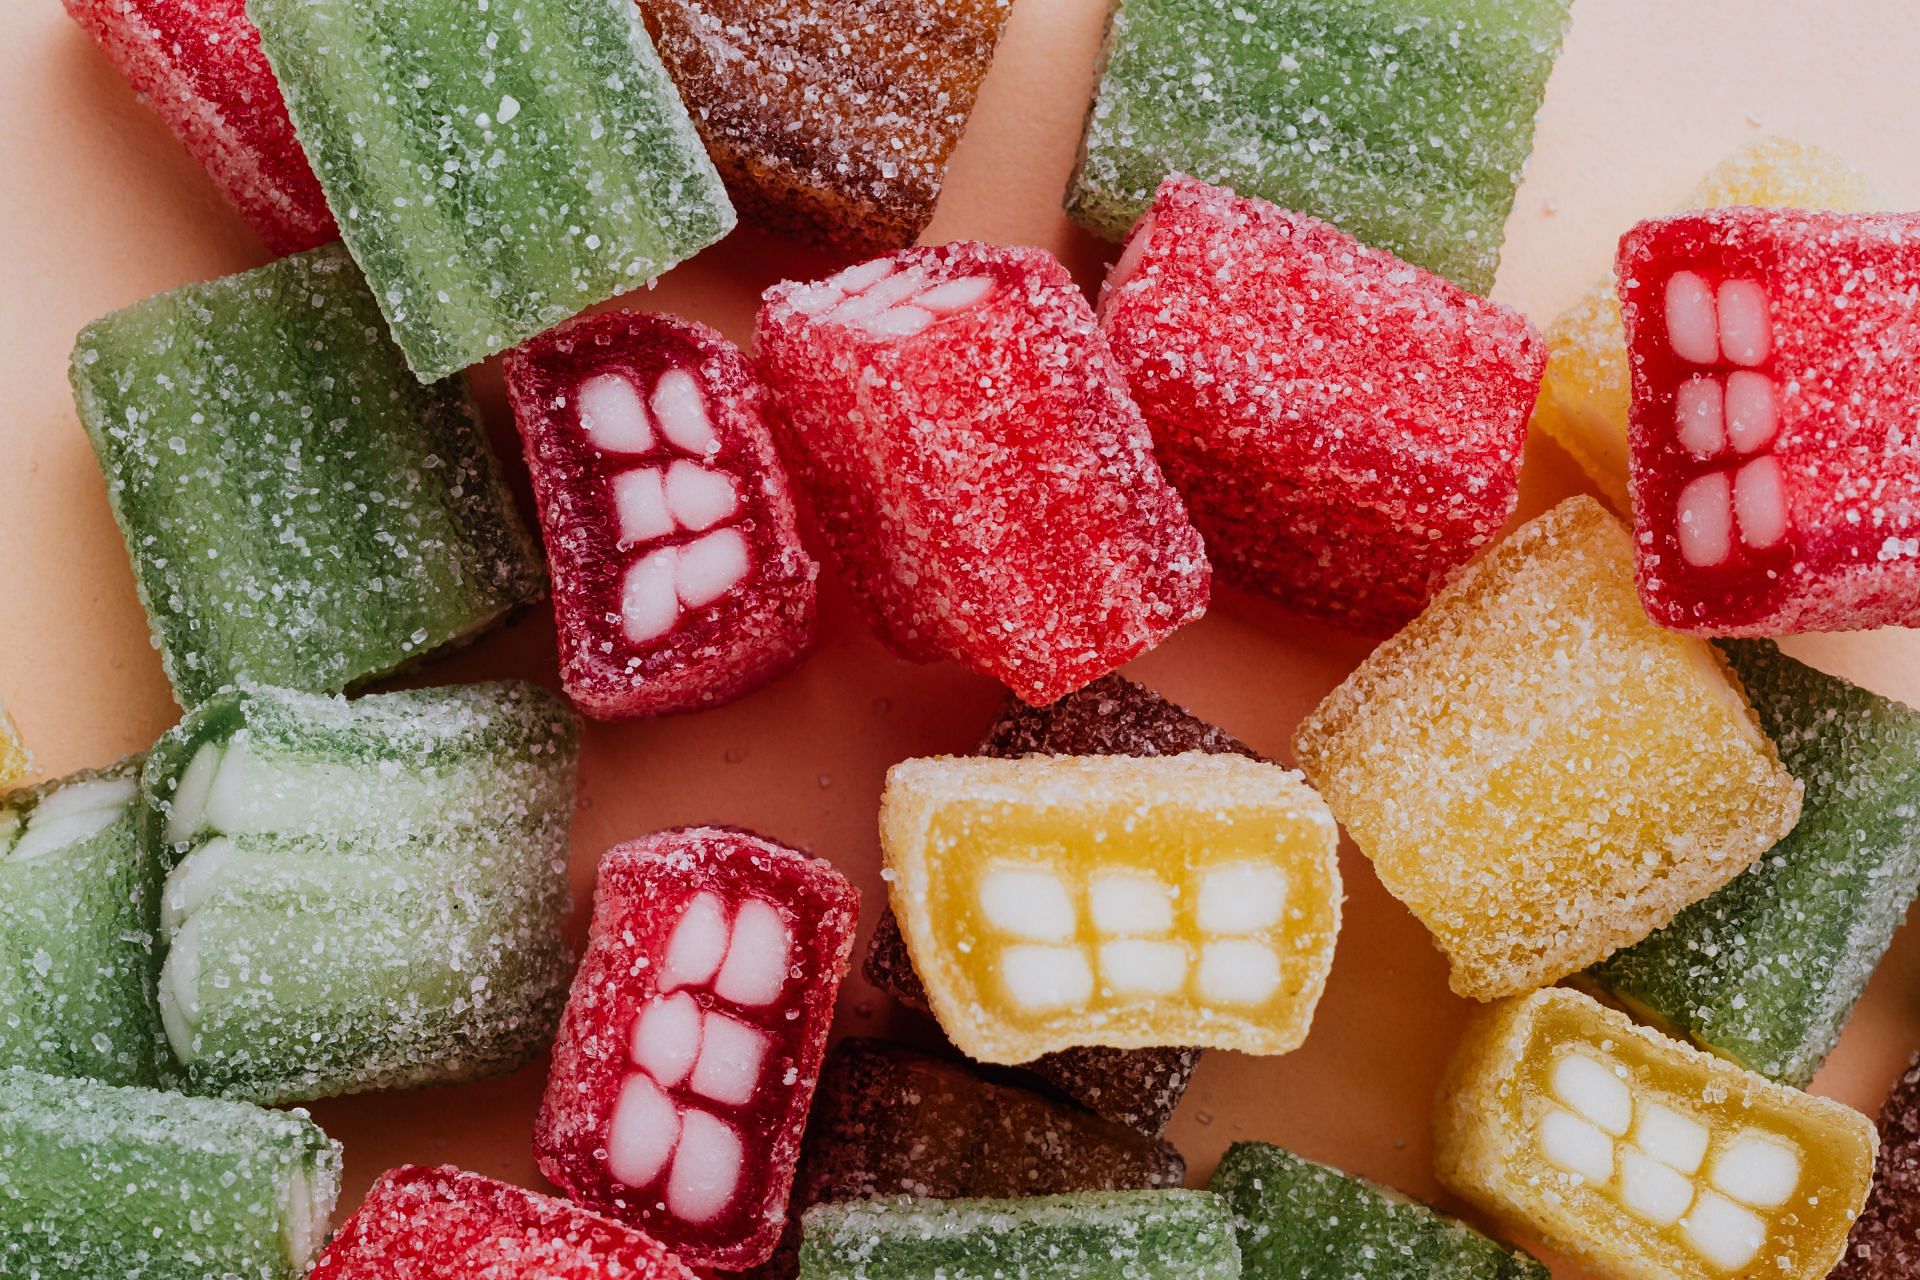 Is there a link between eating sour things and serotonin? (Image via Pexels/Karolina Grabowska)